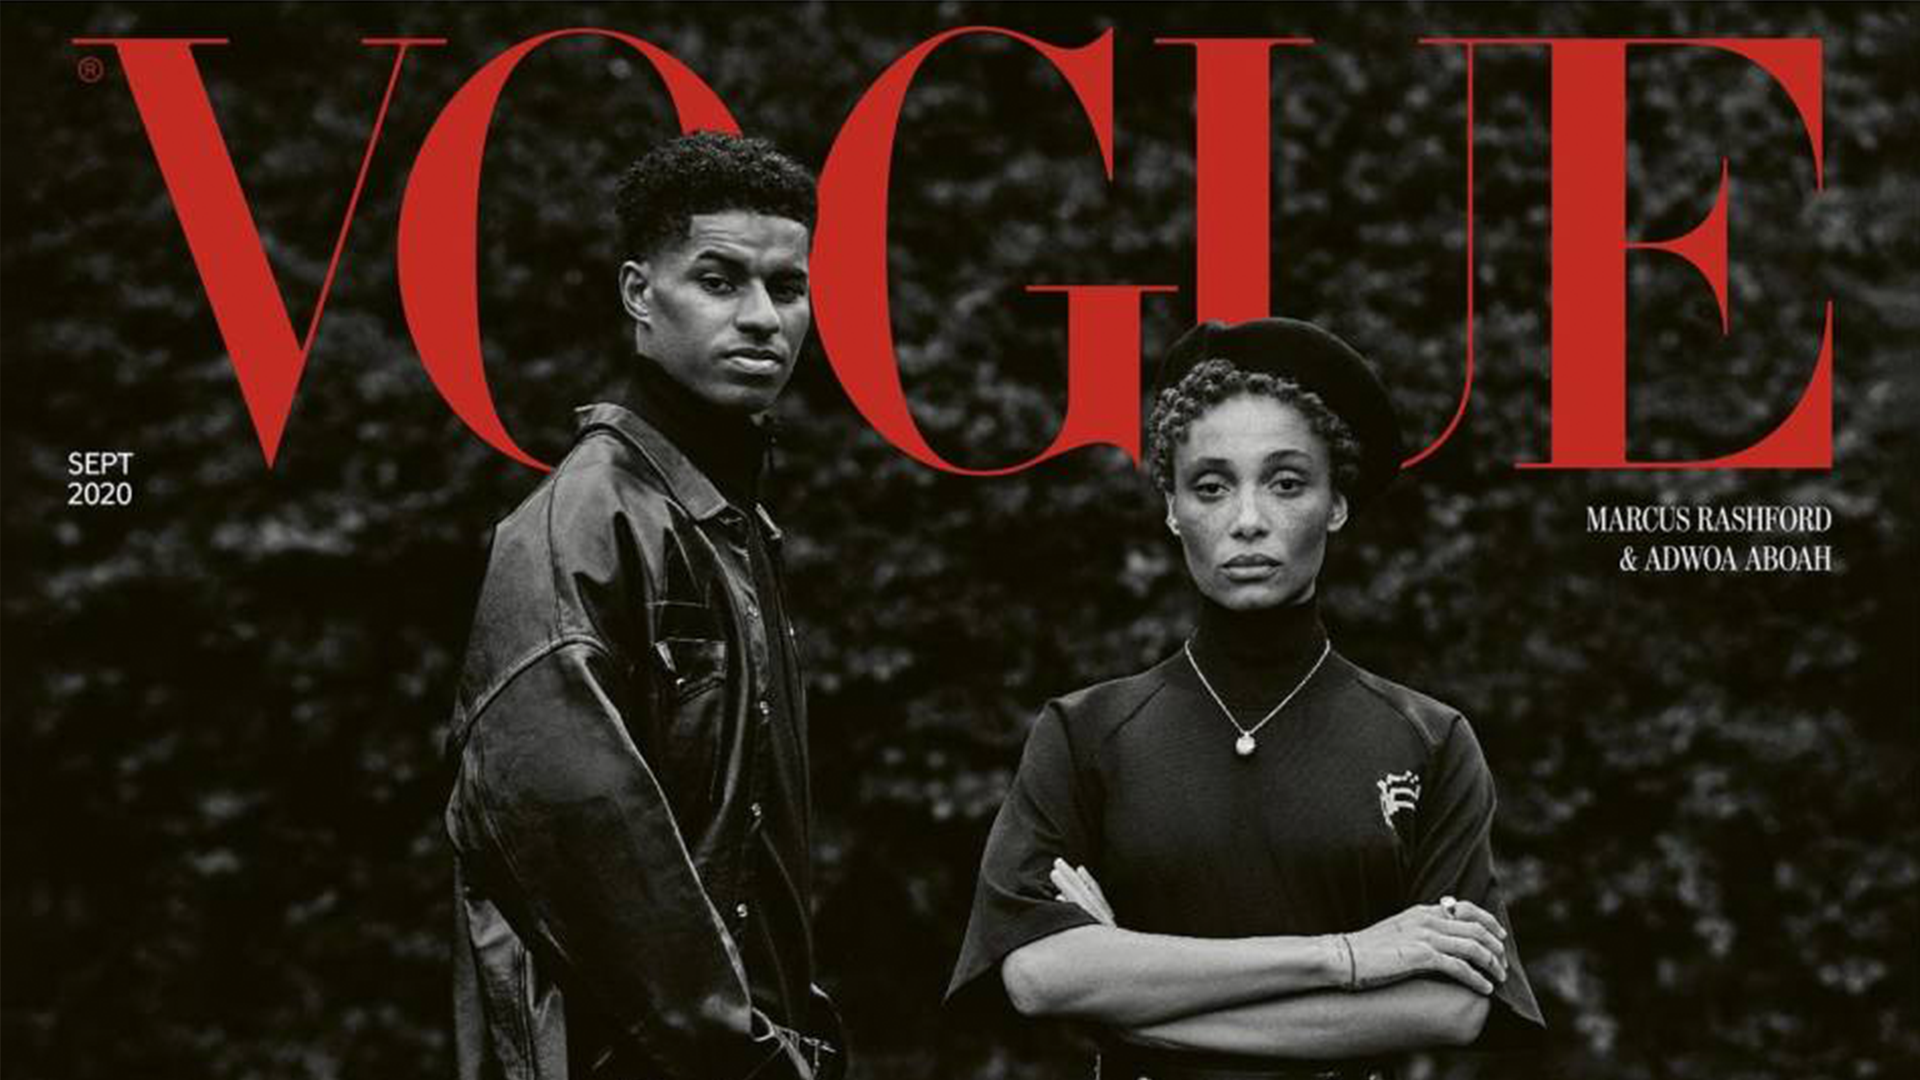 Vogue - Sep 2020